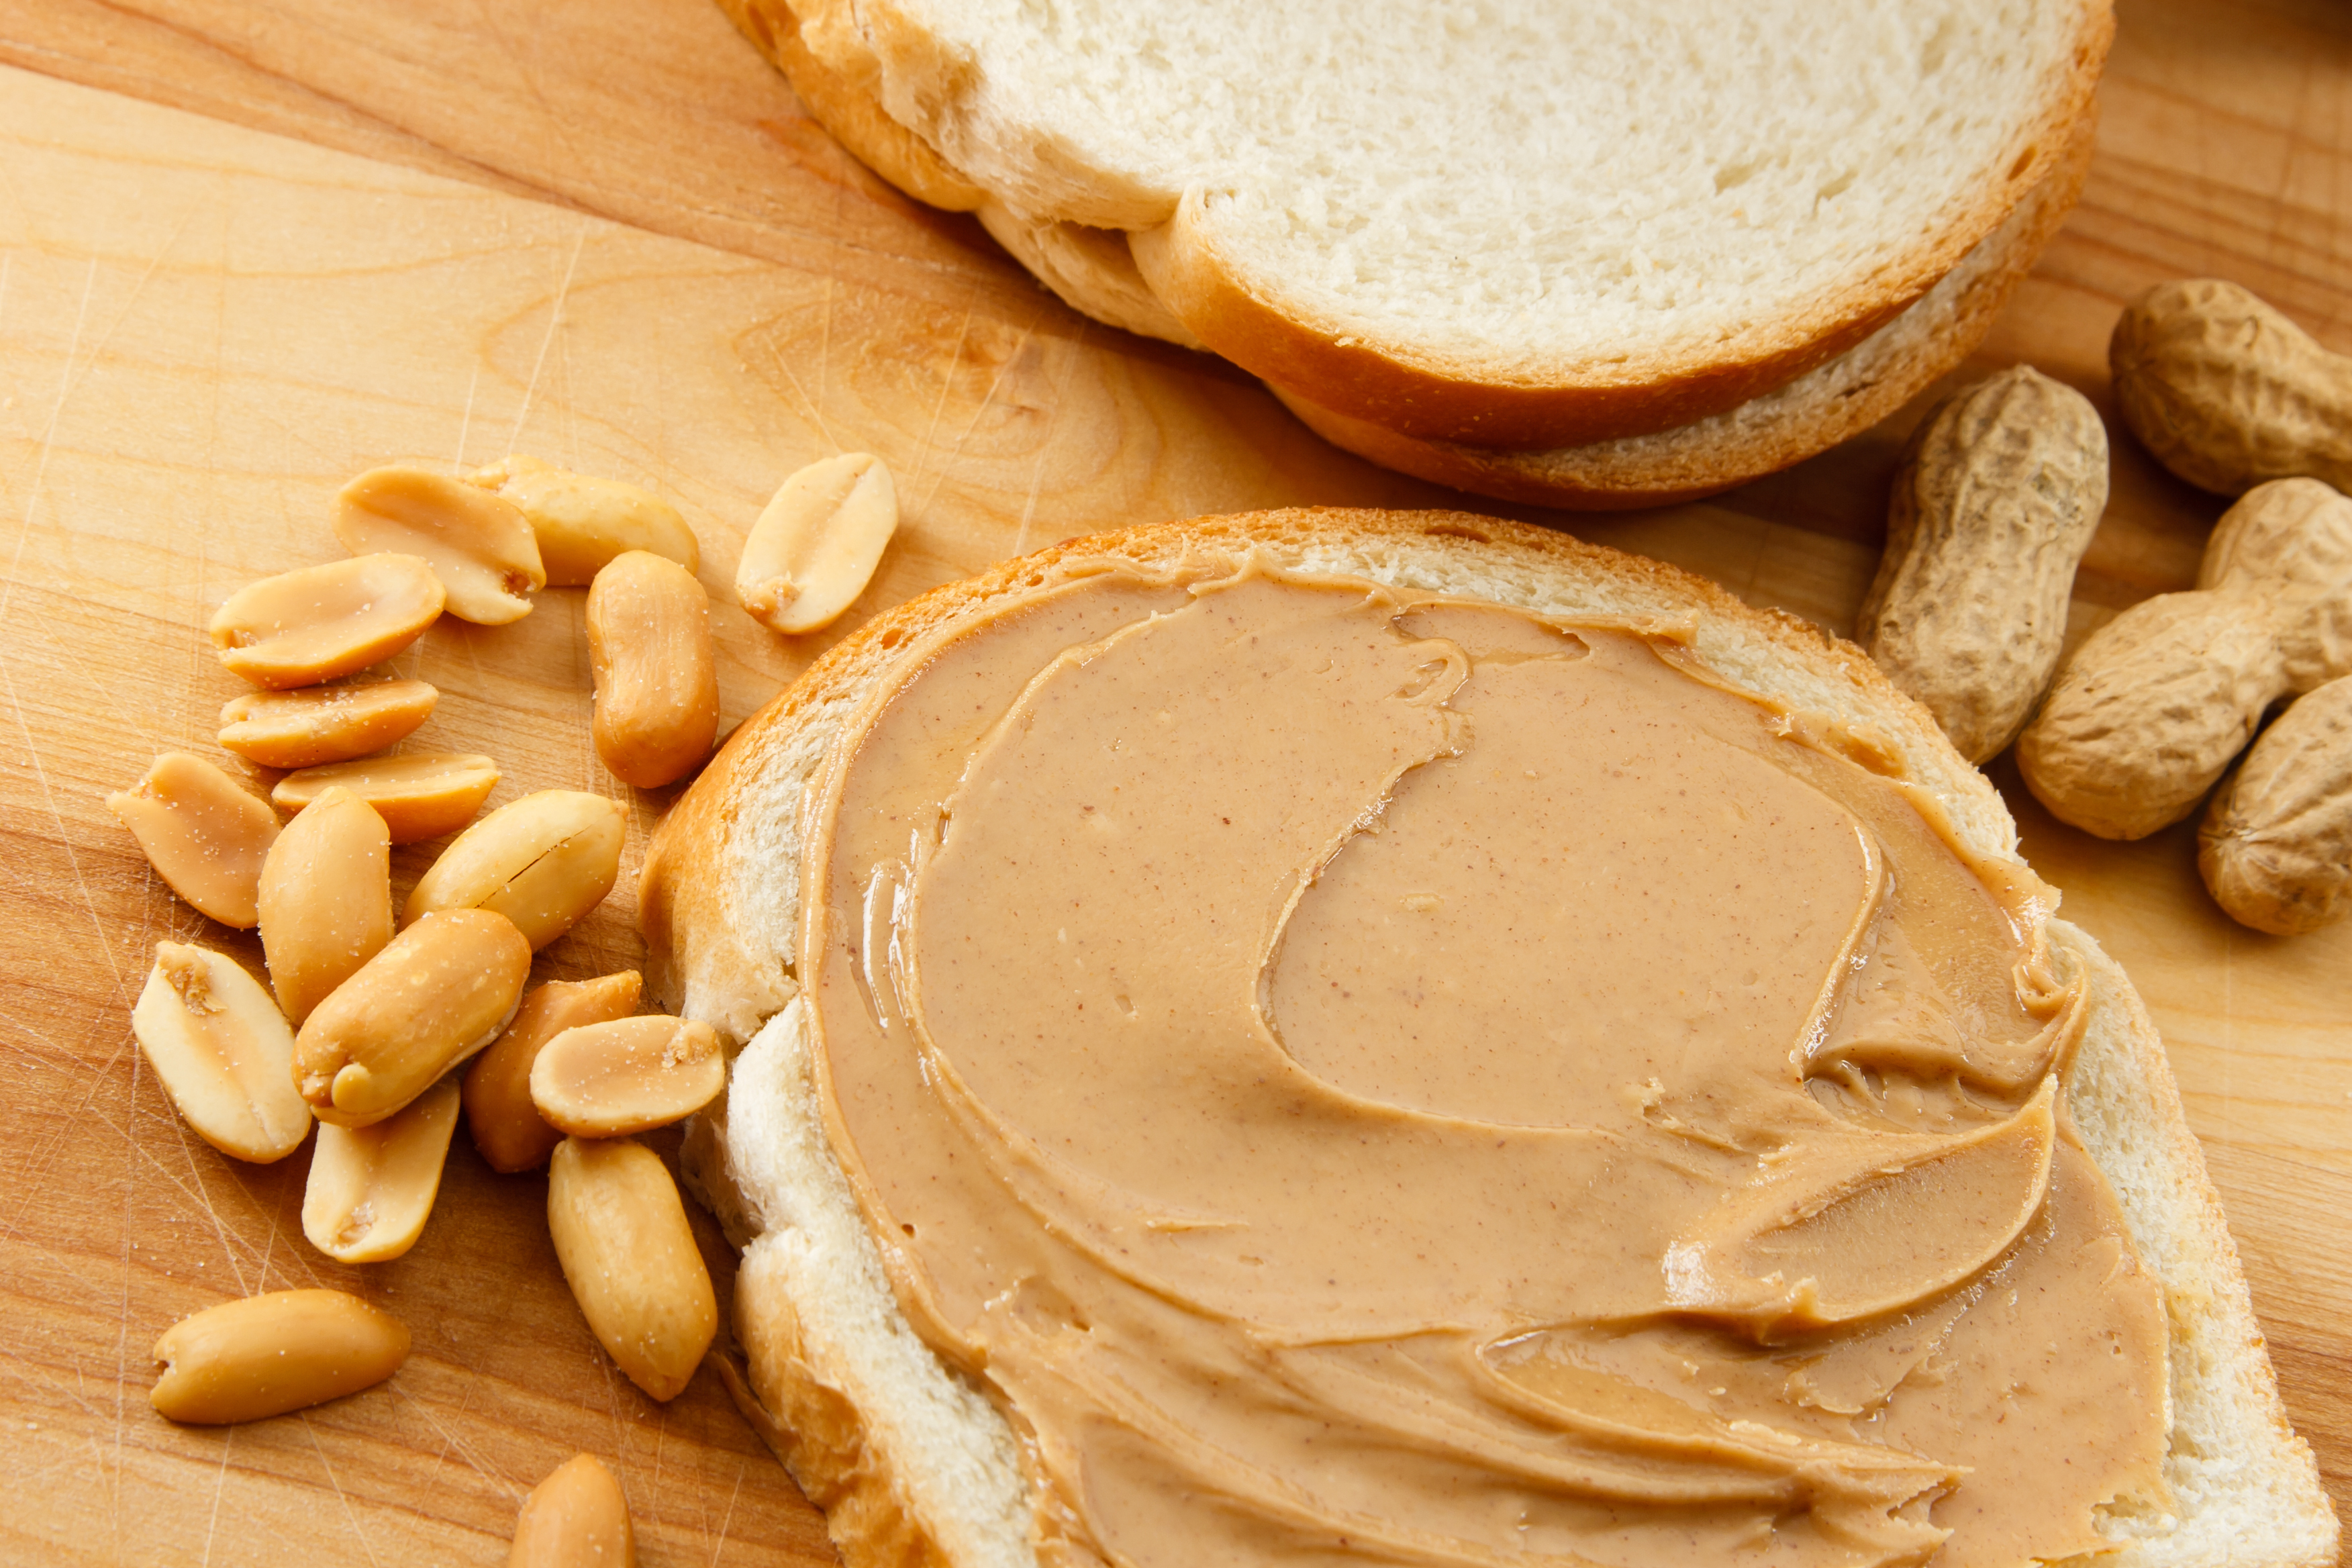 Dica do Profissional: Os benefícios da pasta de amendoim